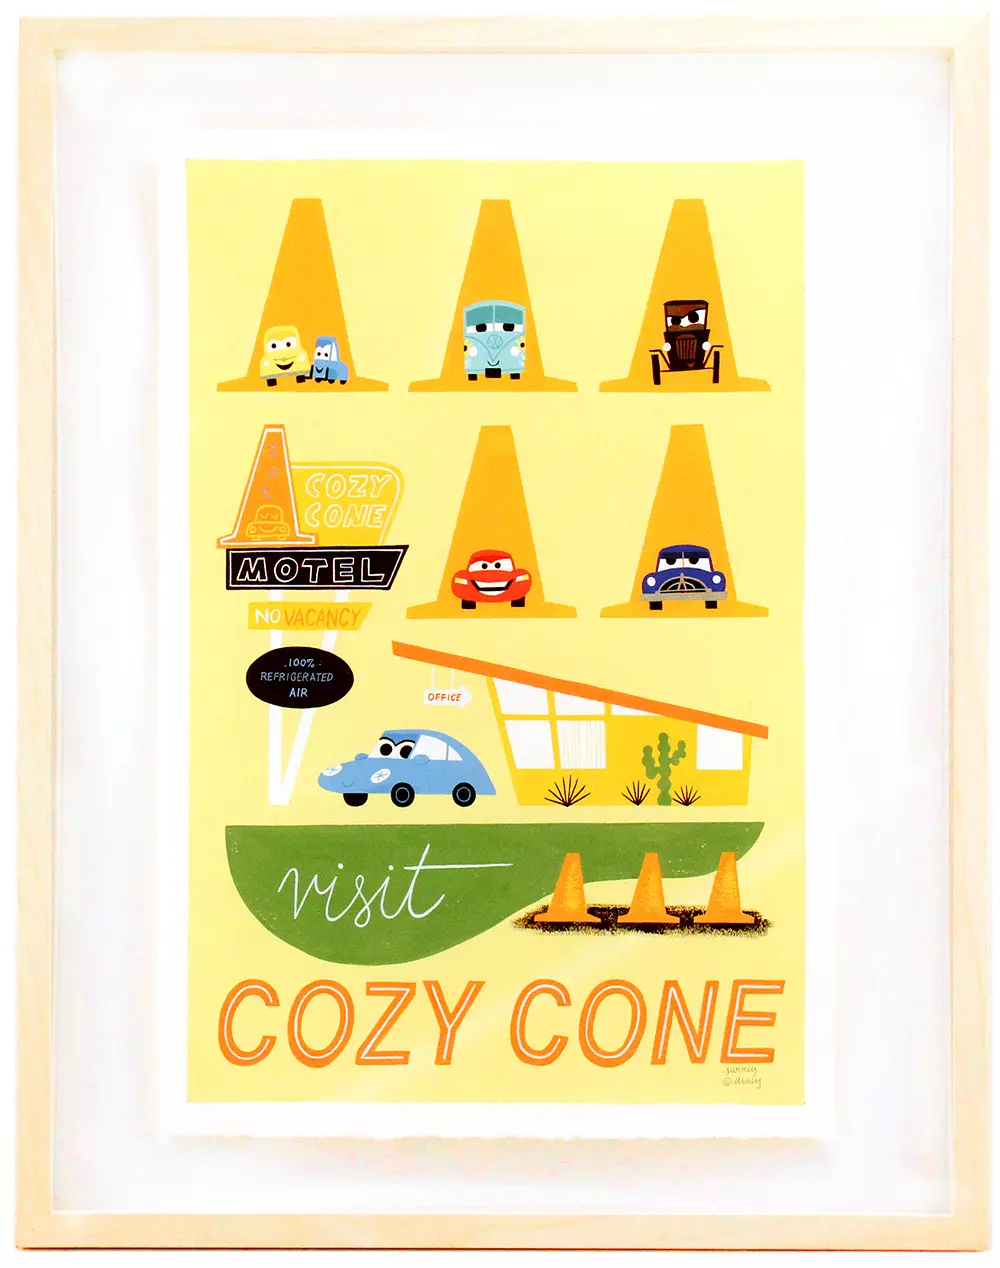 Visit the Cozy Cone, Ellen Surrey